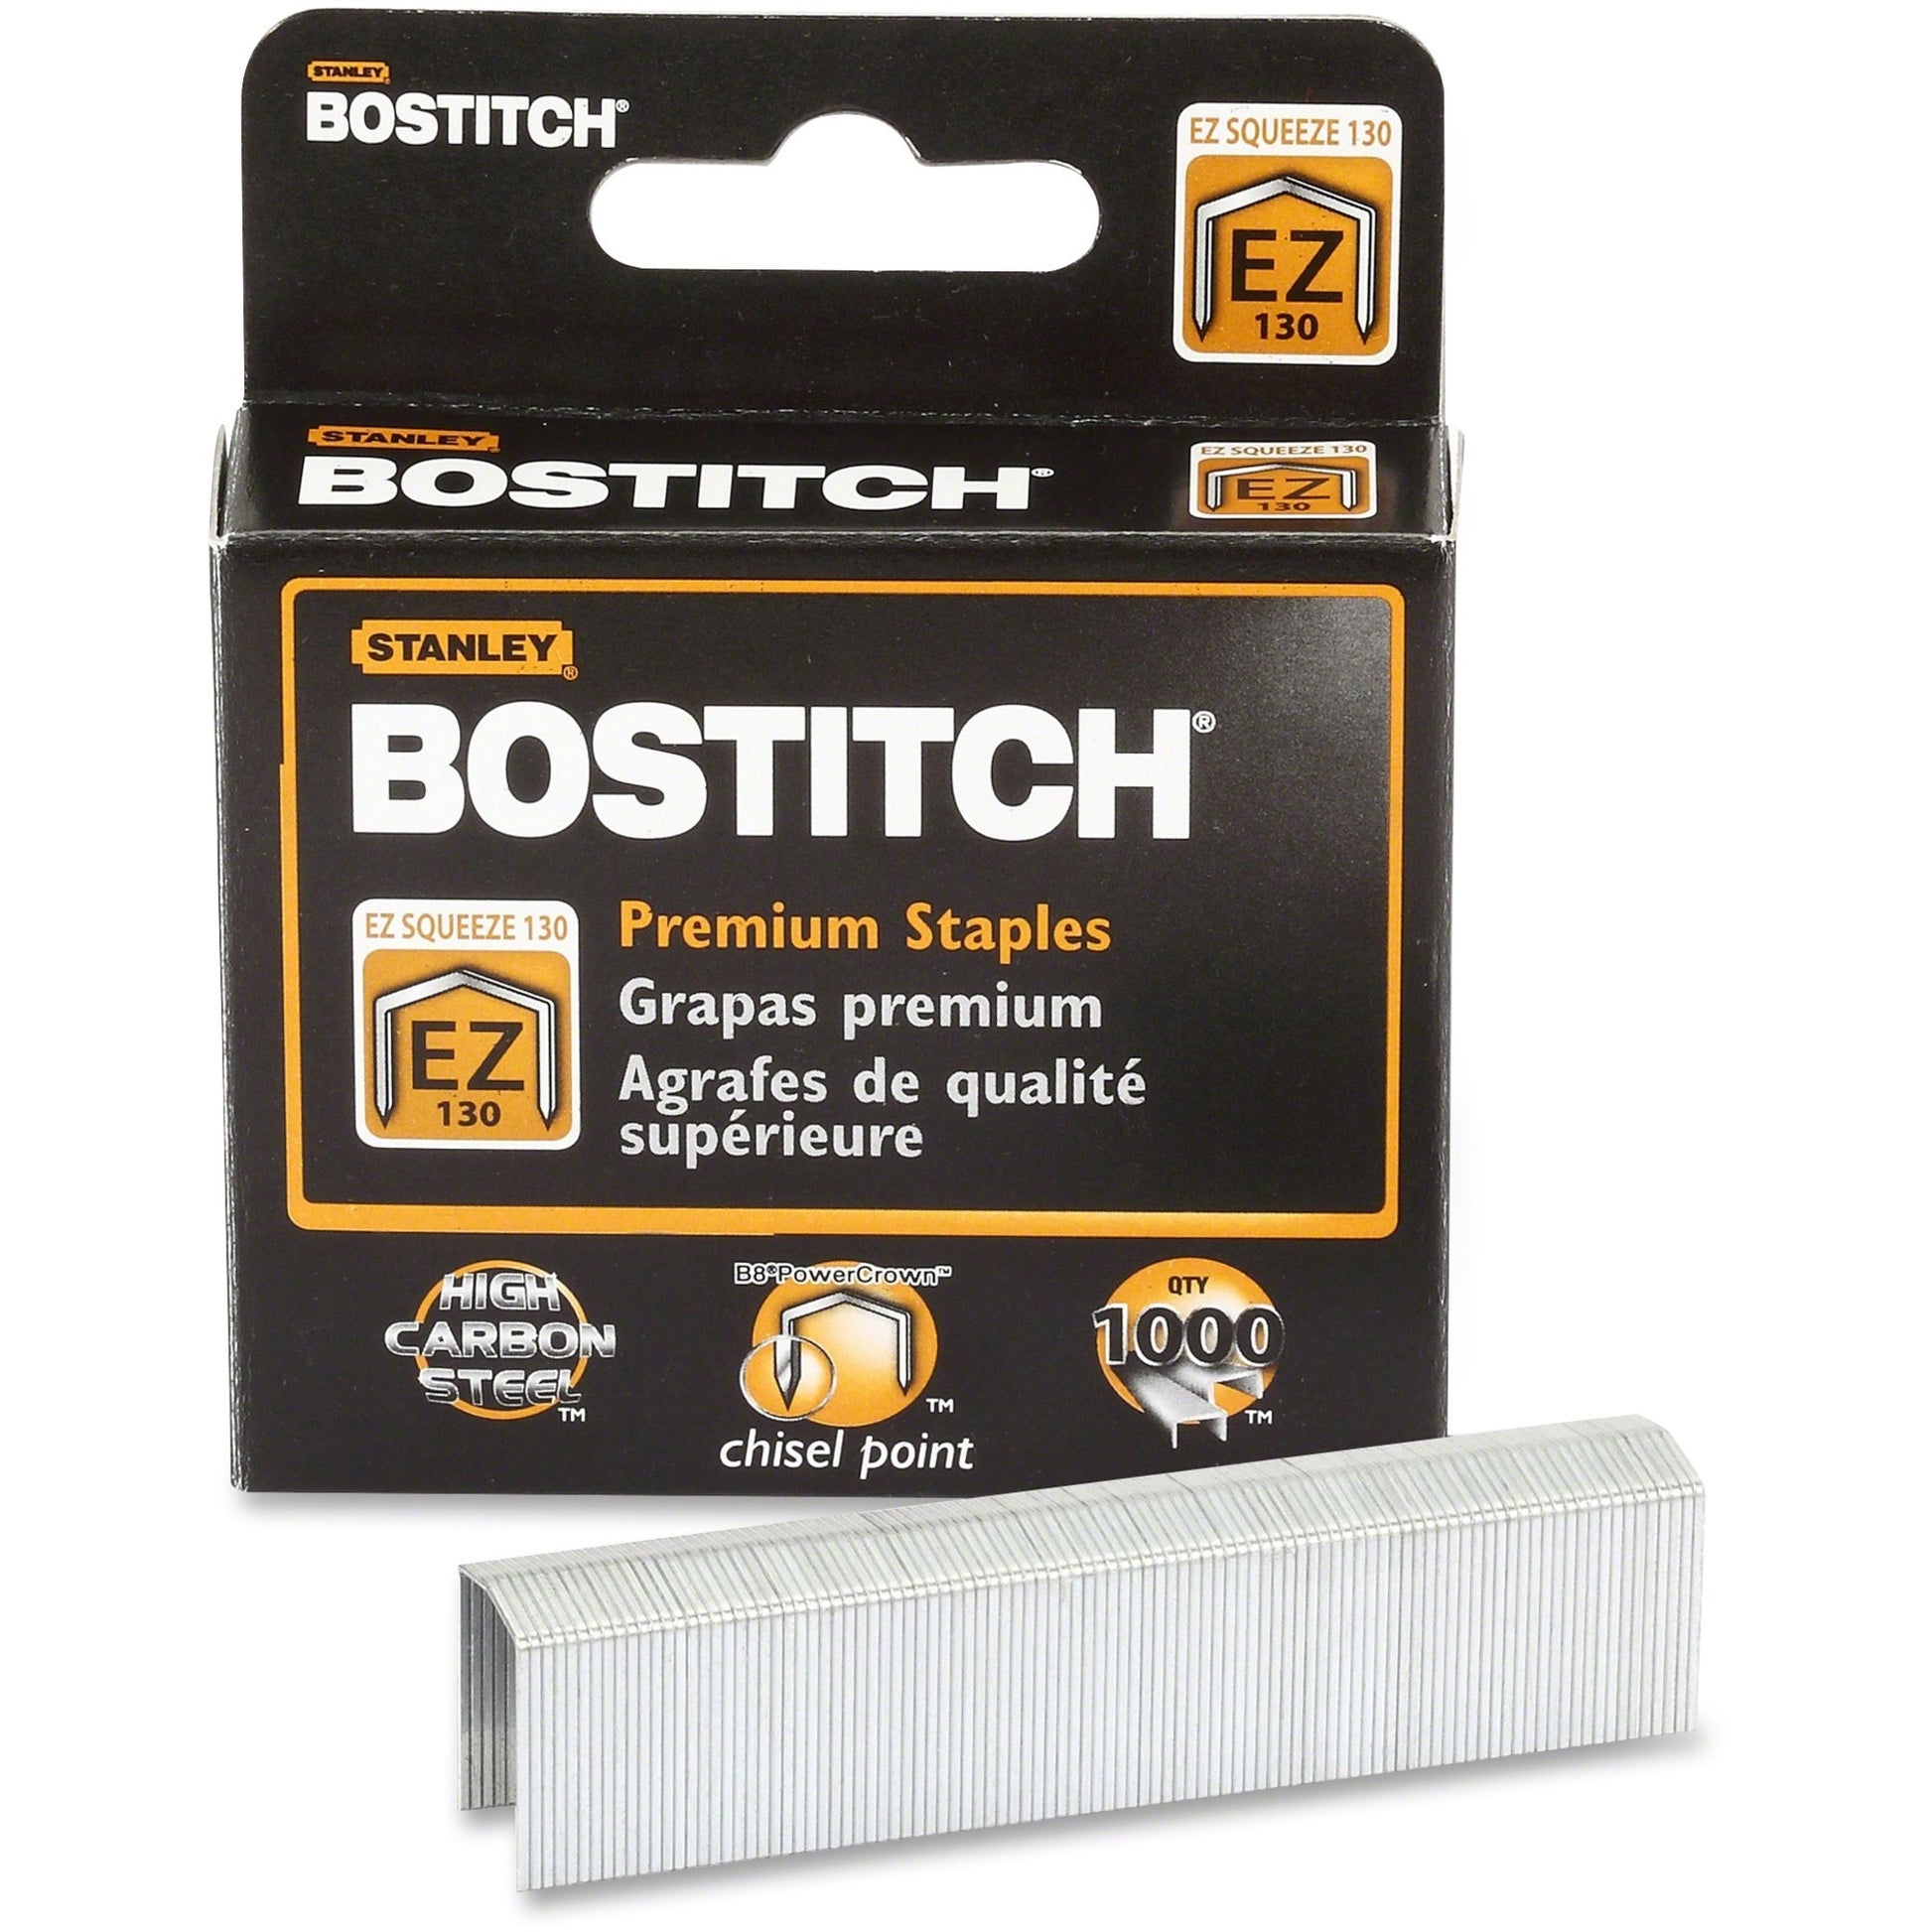 Bostitch EZ Squeeze 130 Premium Staples